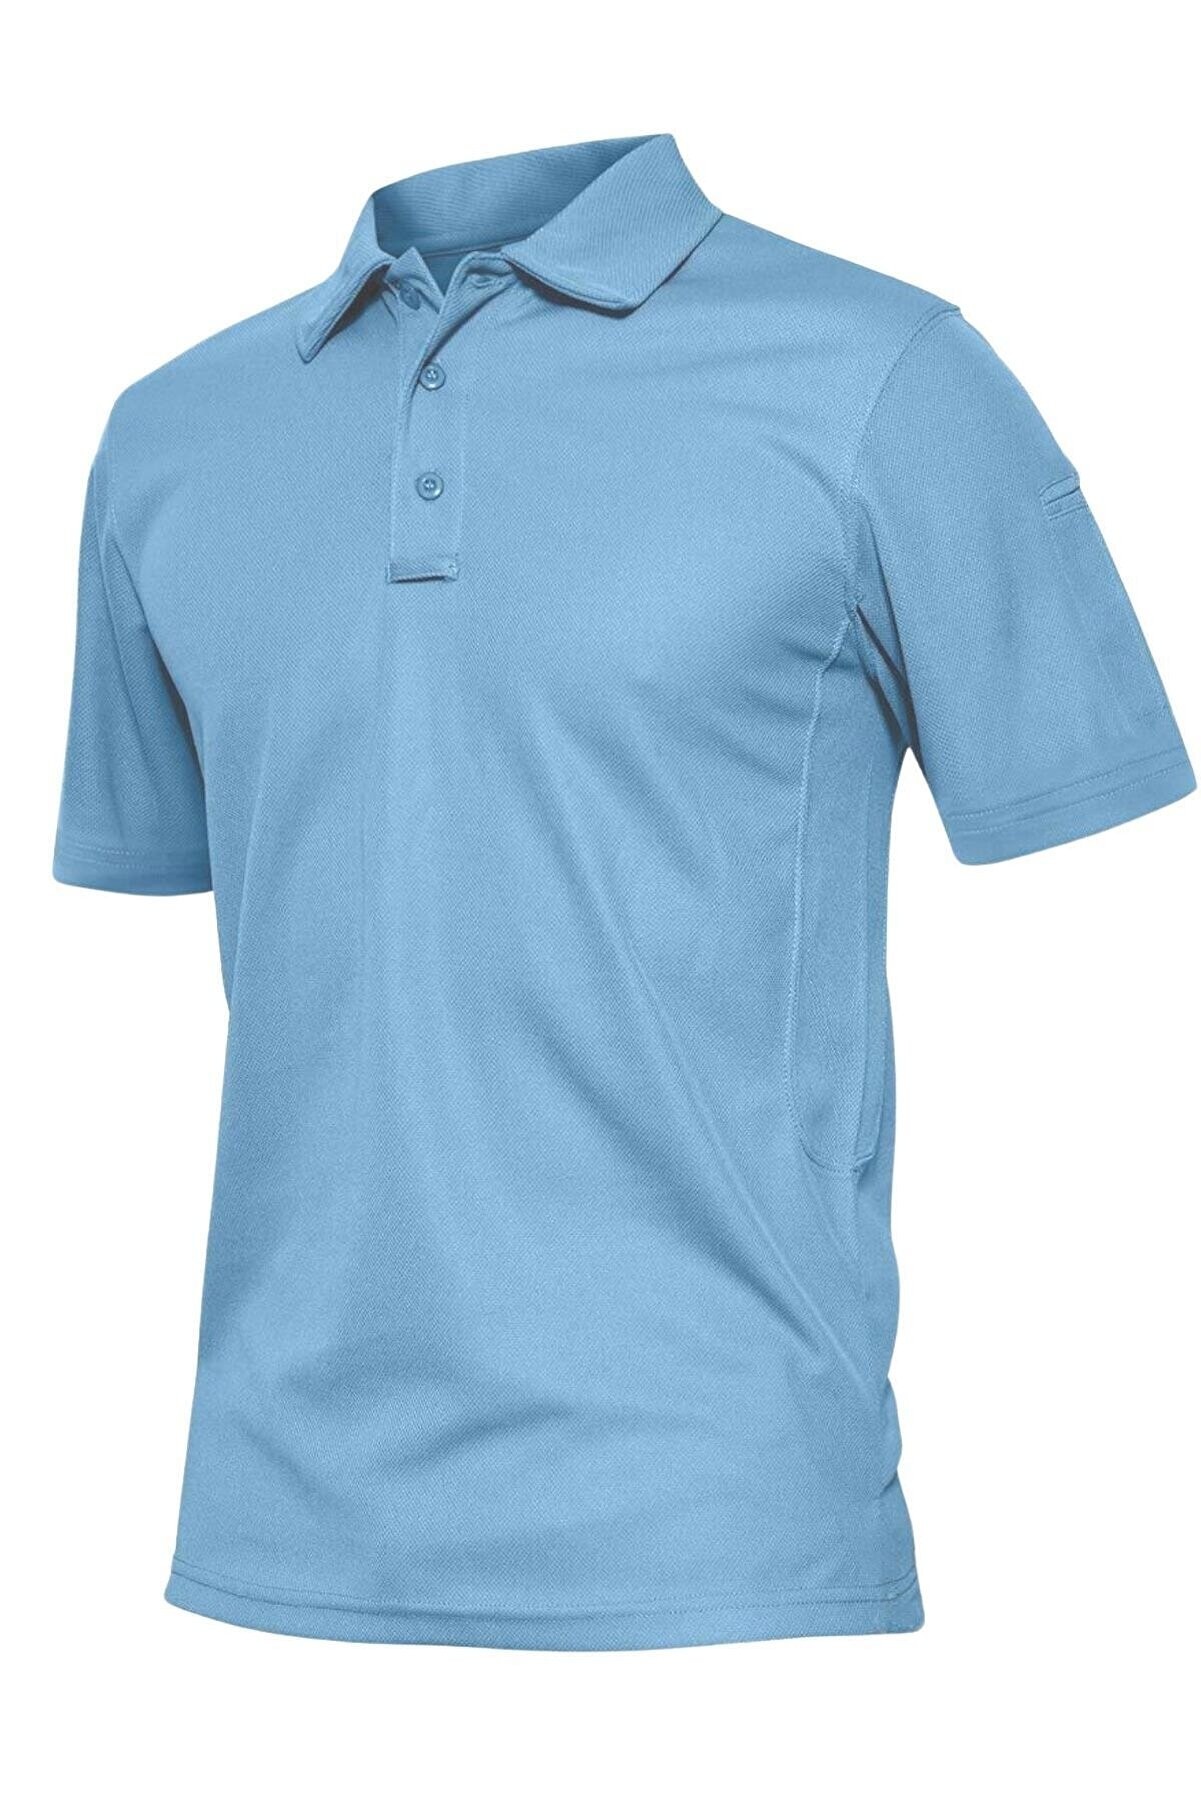 Ghassy Co. Erkek Taktik Polo Yaka Gömlek Hızlı Kuruma Nem Emici Performans Pique Jersey Golf T-shirt - Açık Mavi